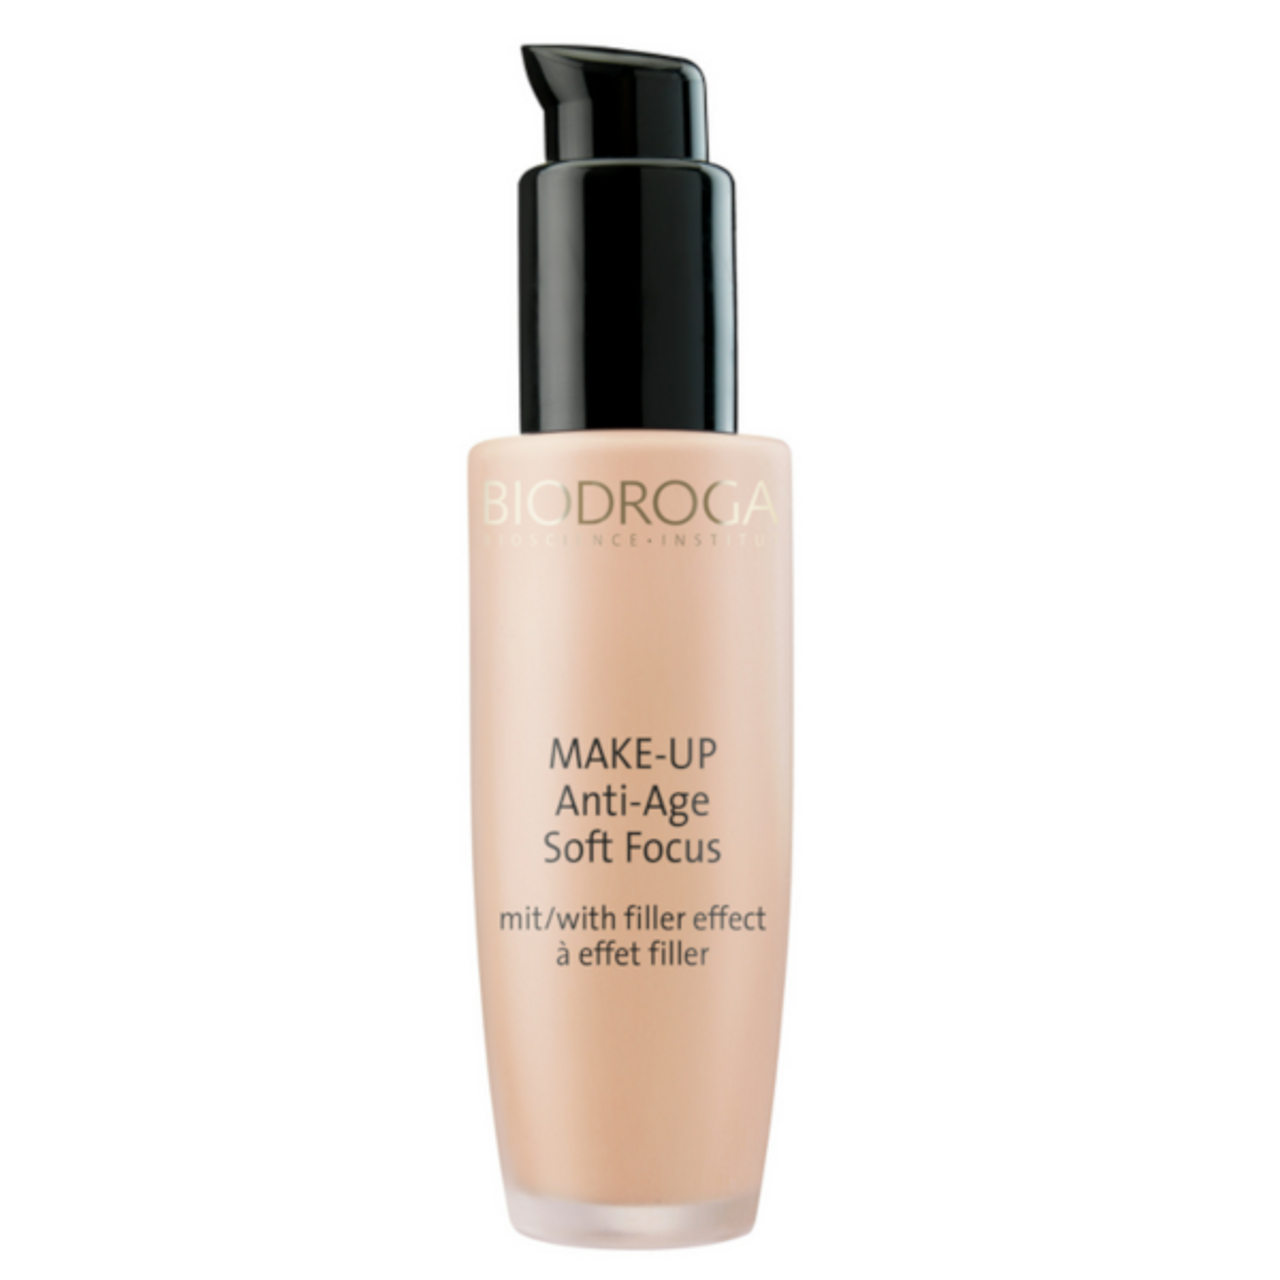 Biodroga Soft Focus Anti-age Makeup - 30 ml